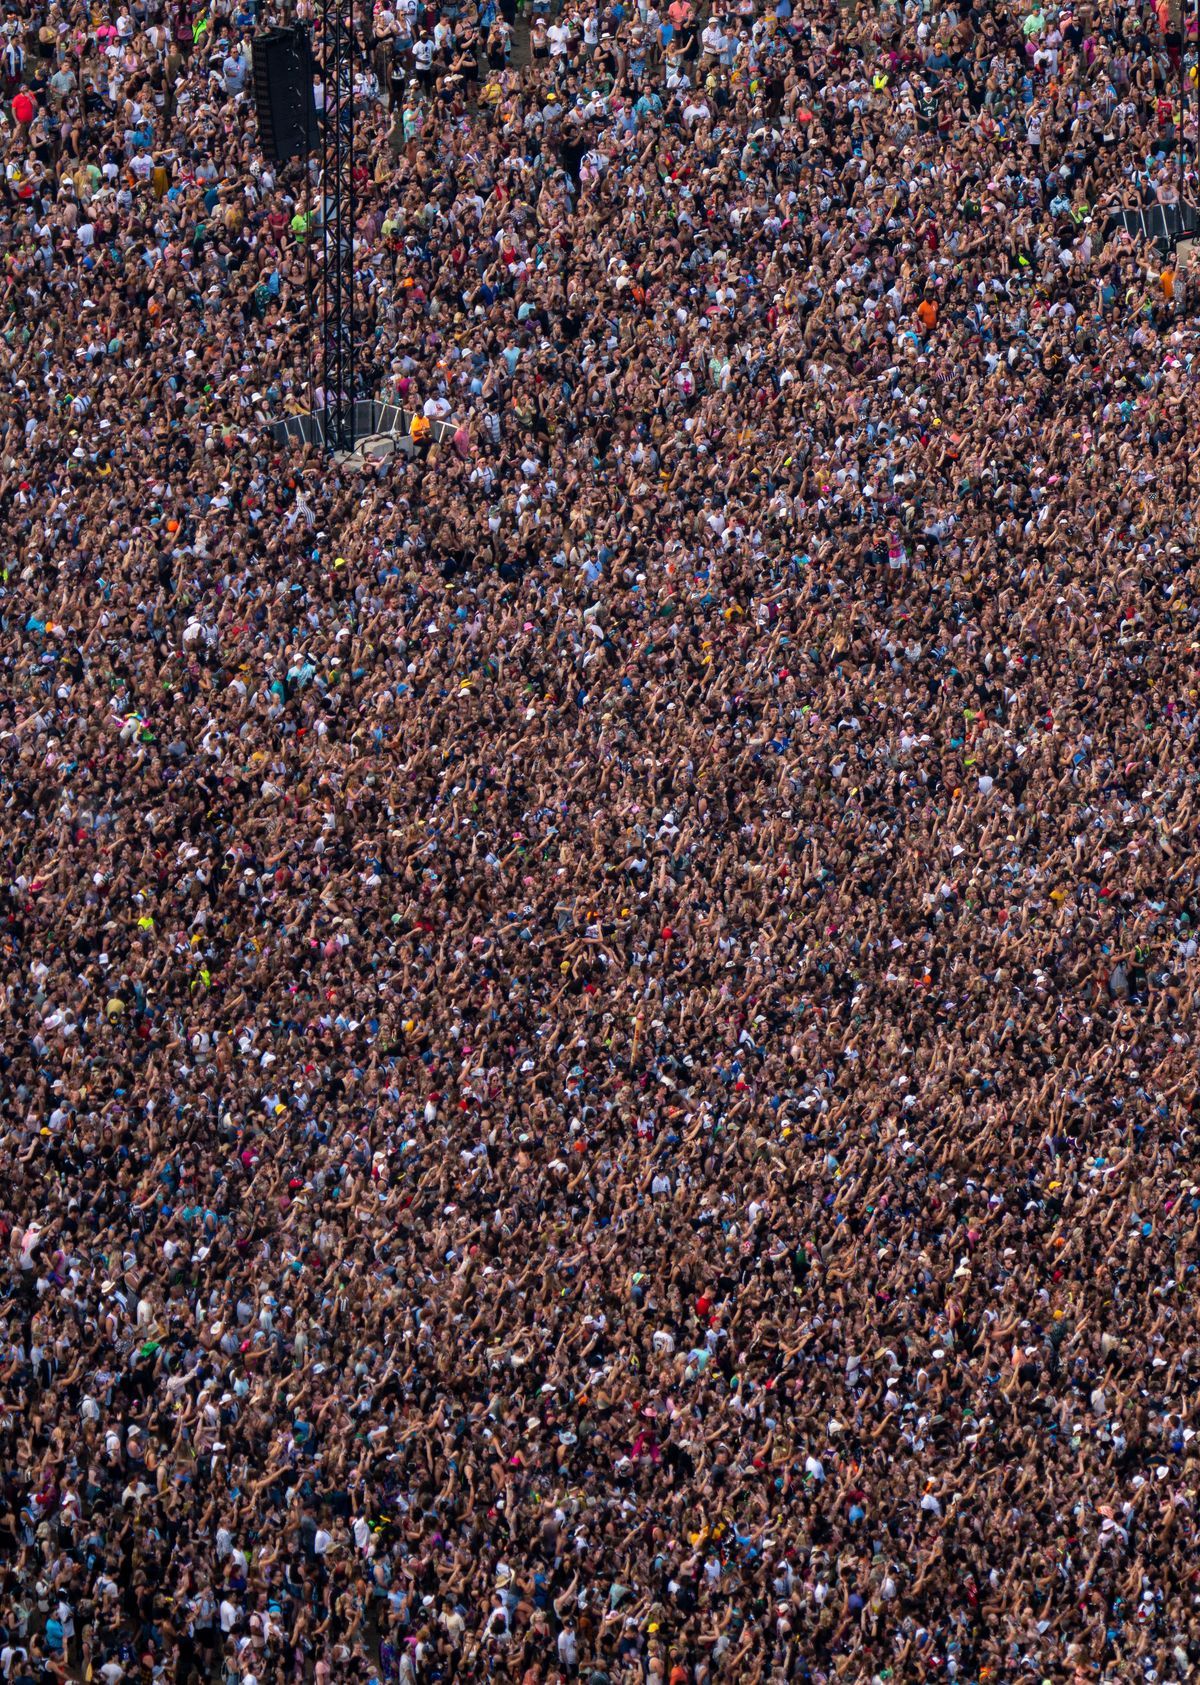 Tausende von Menschen füllen die Menge beim Lollapalooza-Musikfestival in Chicago von oben gesehen.